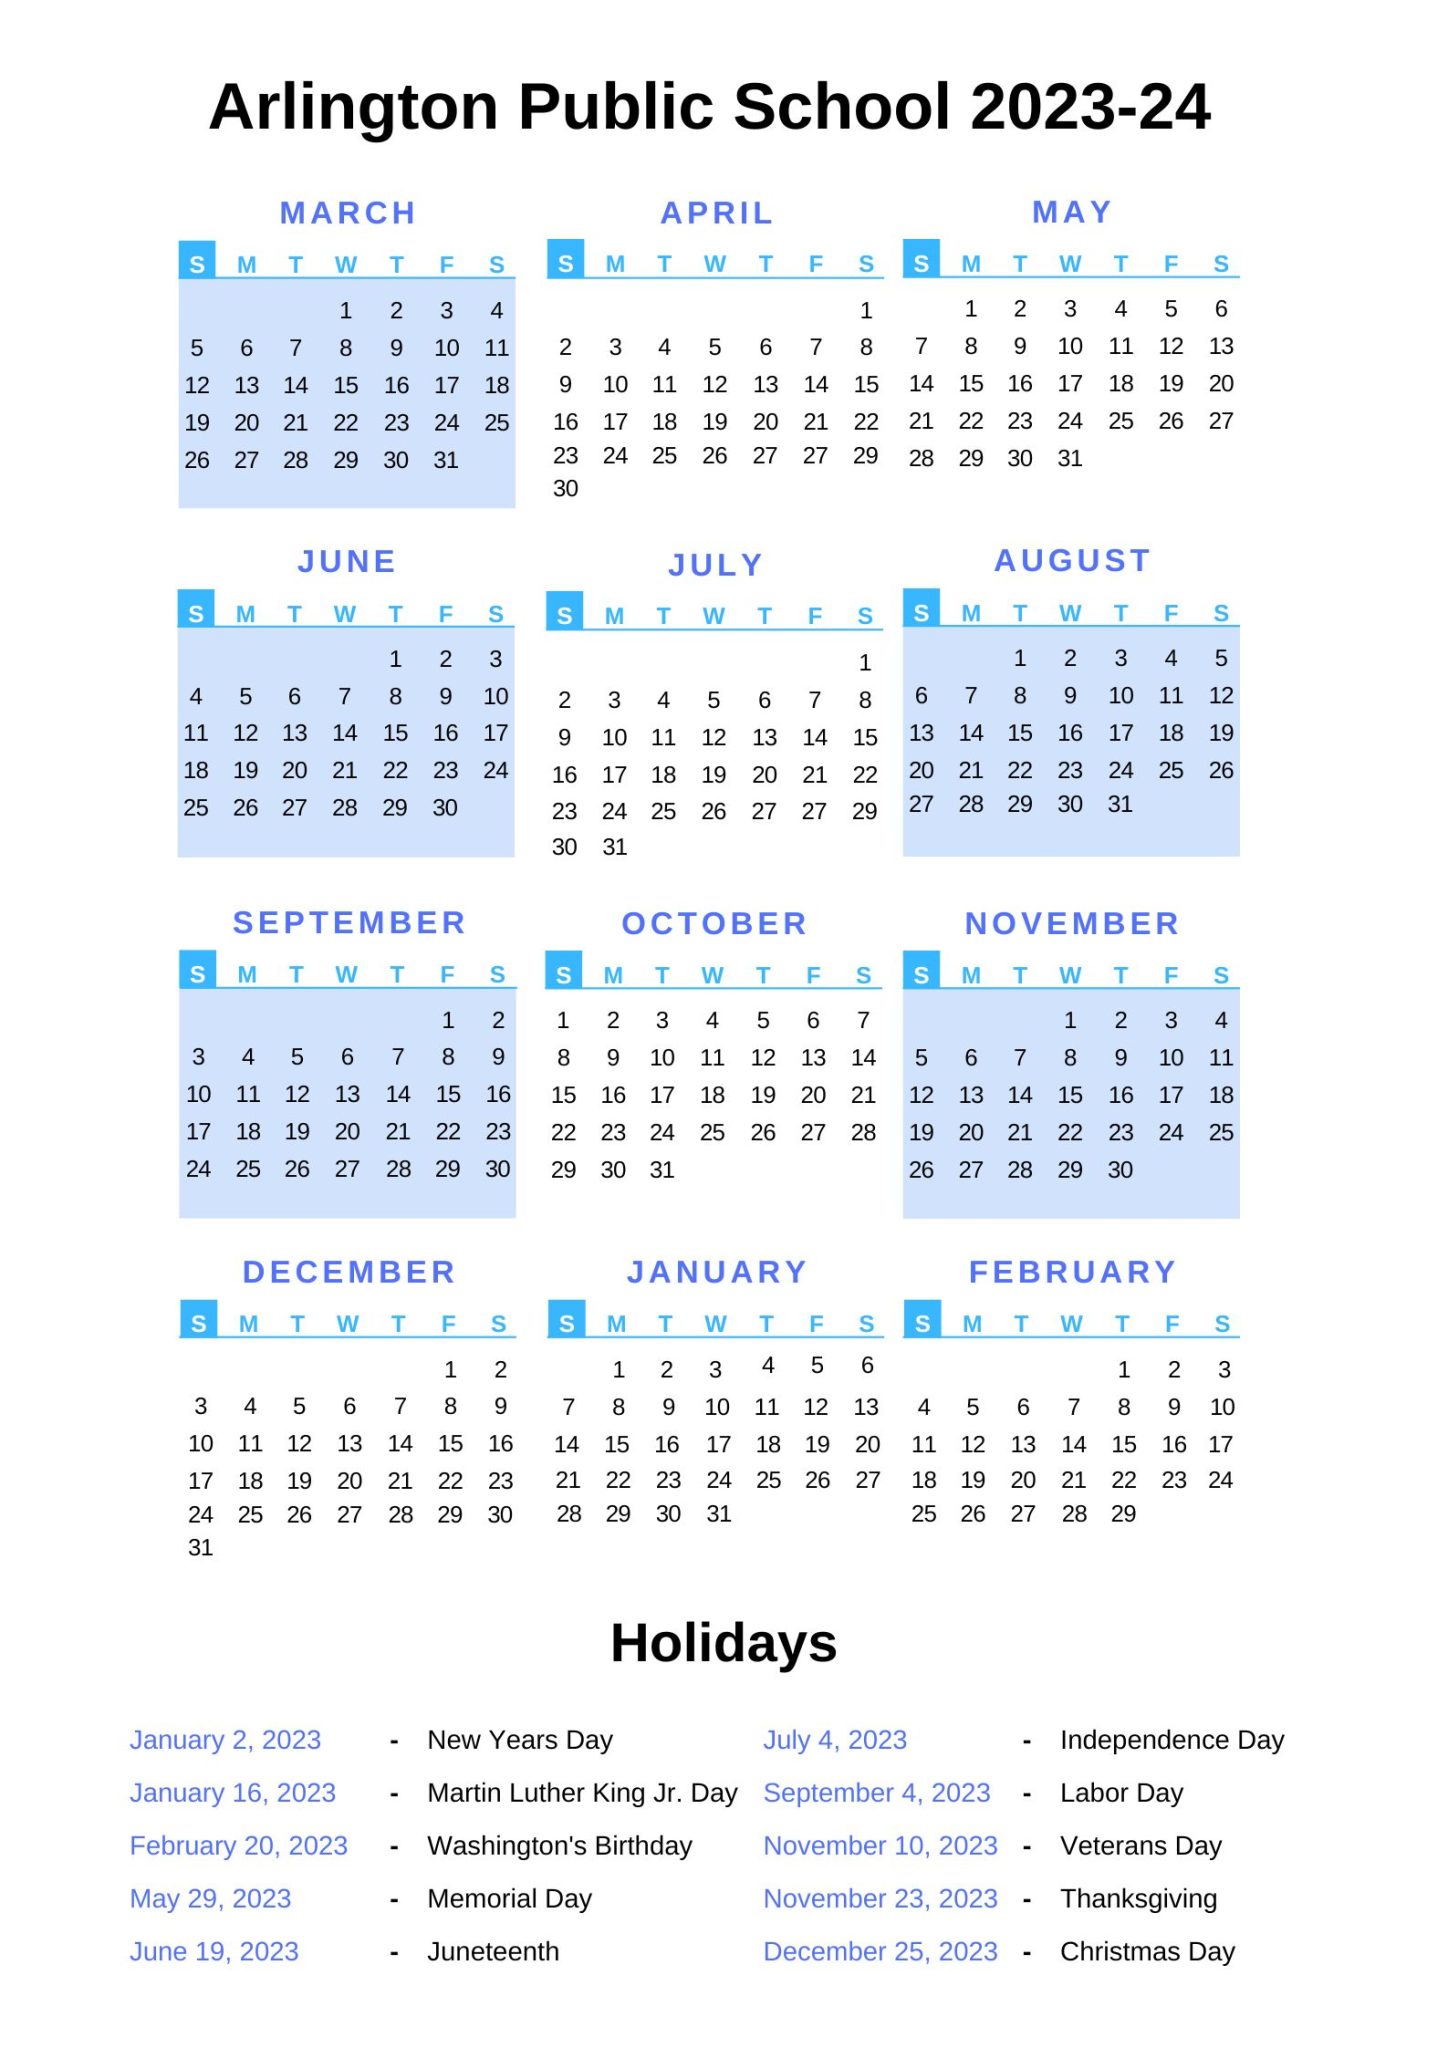 Arlington Public Schools Calendar [APS] 202324 with Holidays